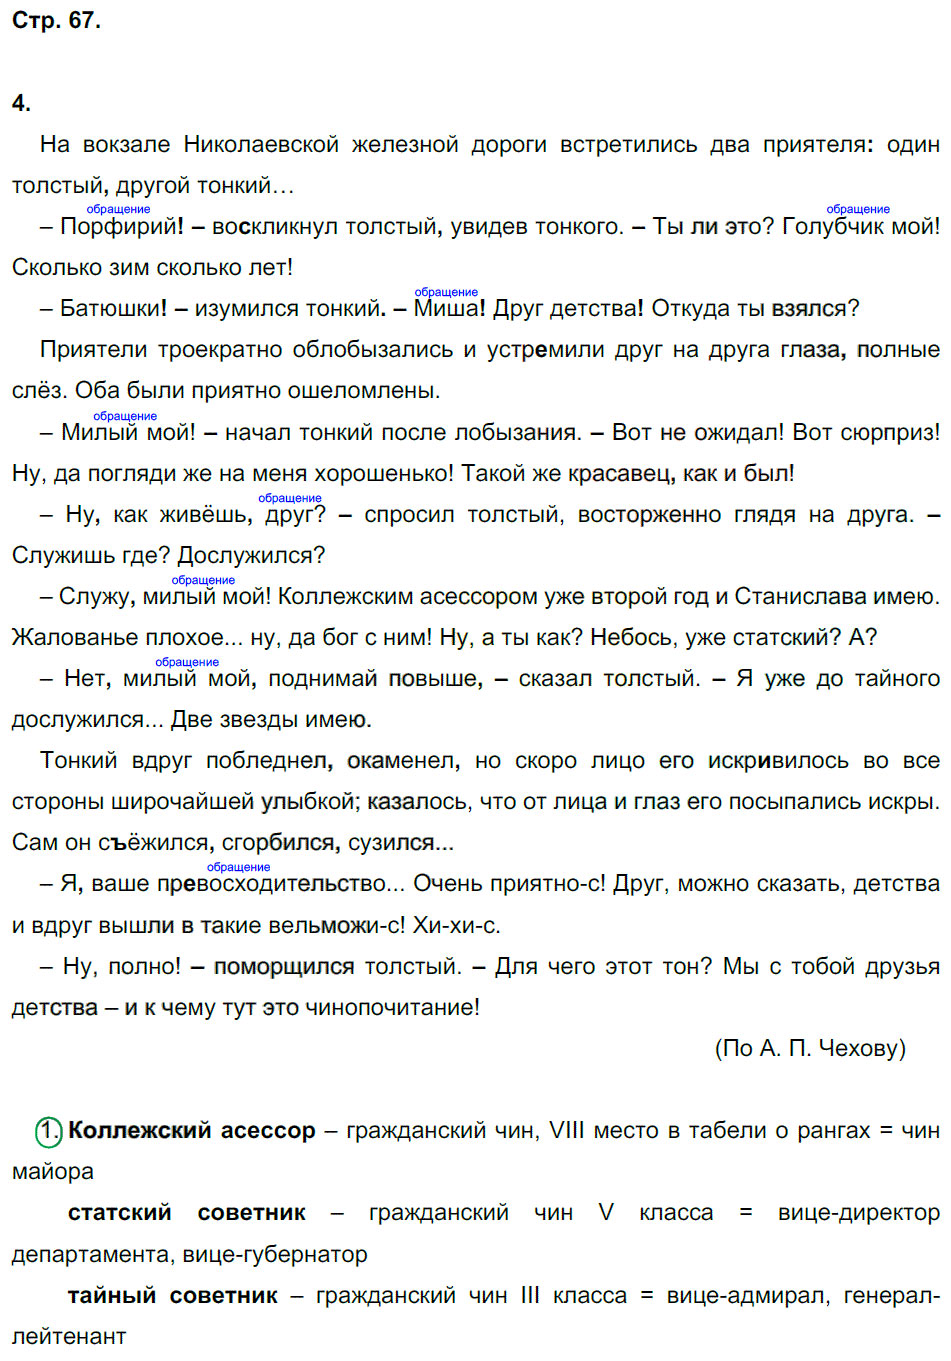 гдз 8 класс рабочая тетрадь страница 67 русский язык Ерохина